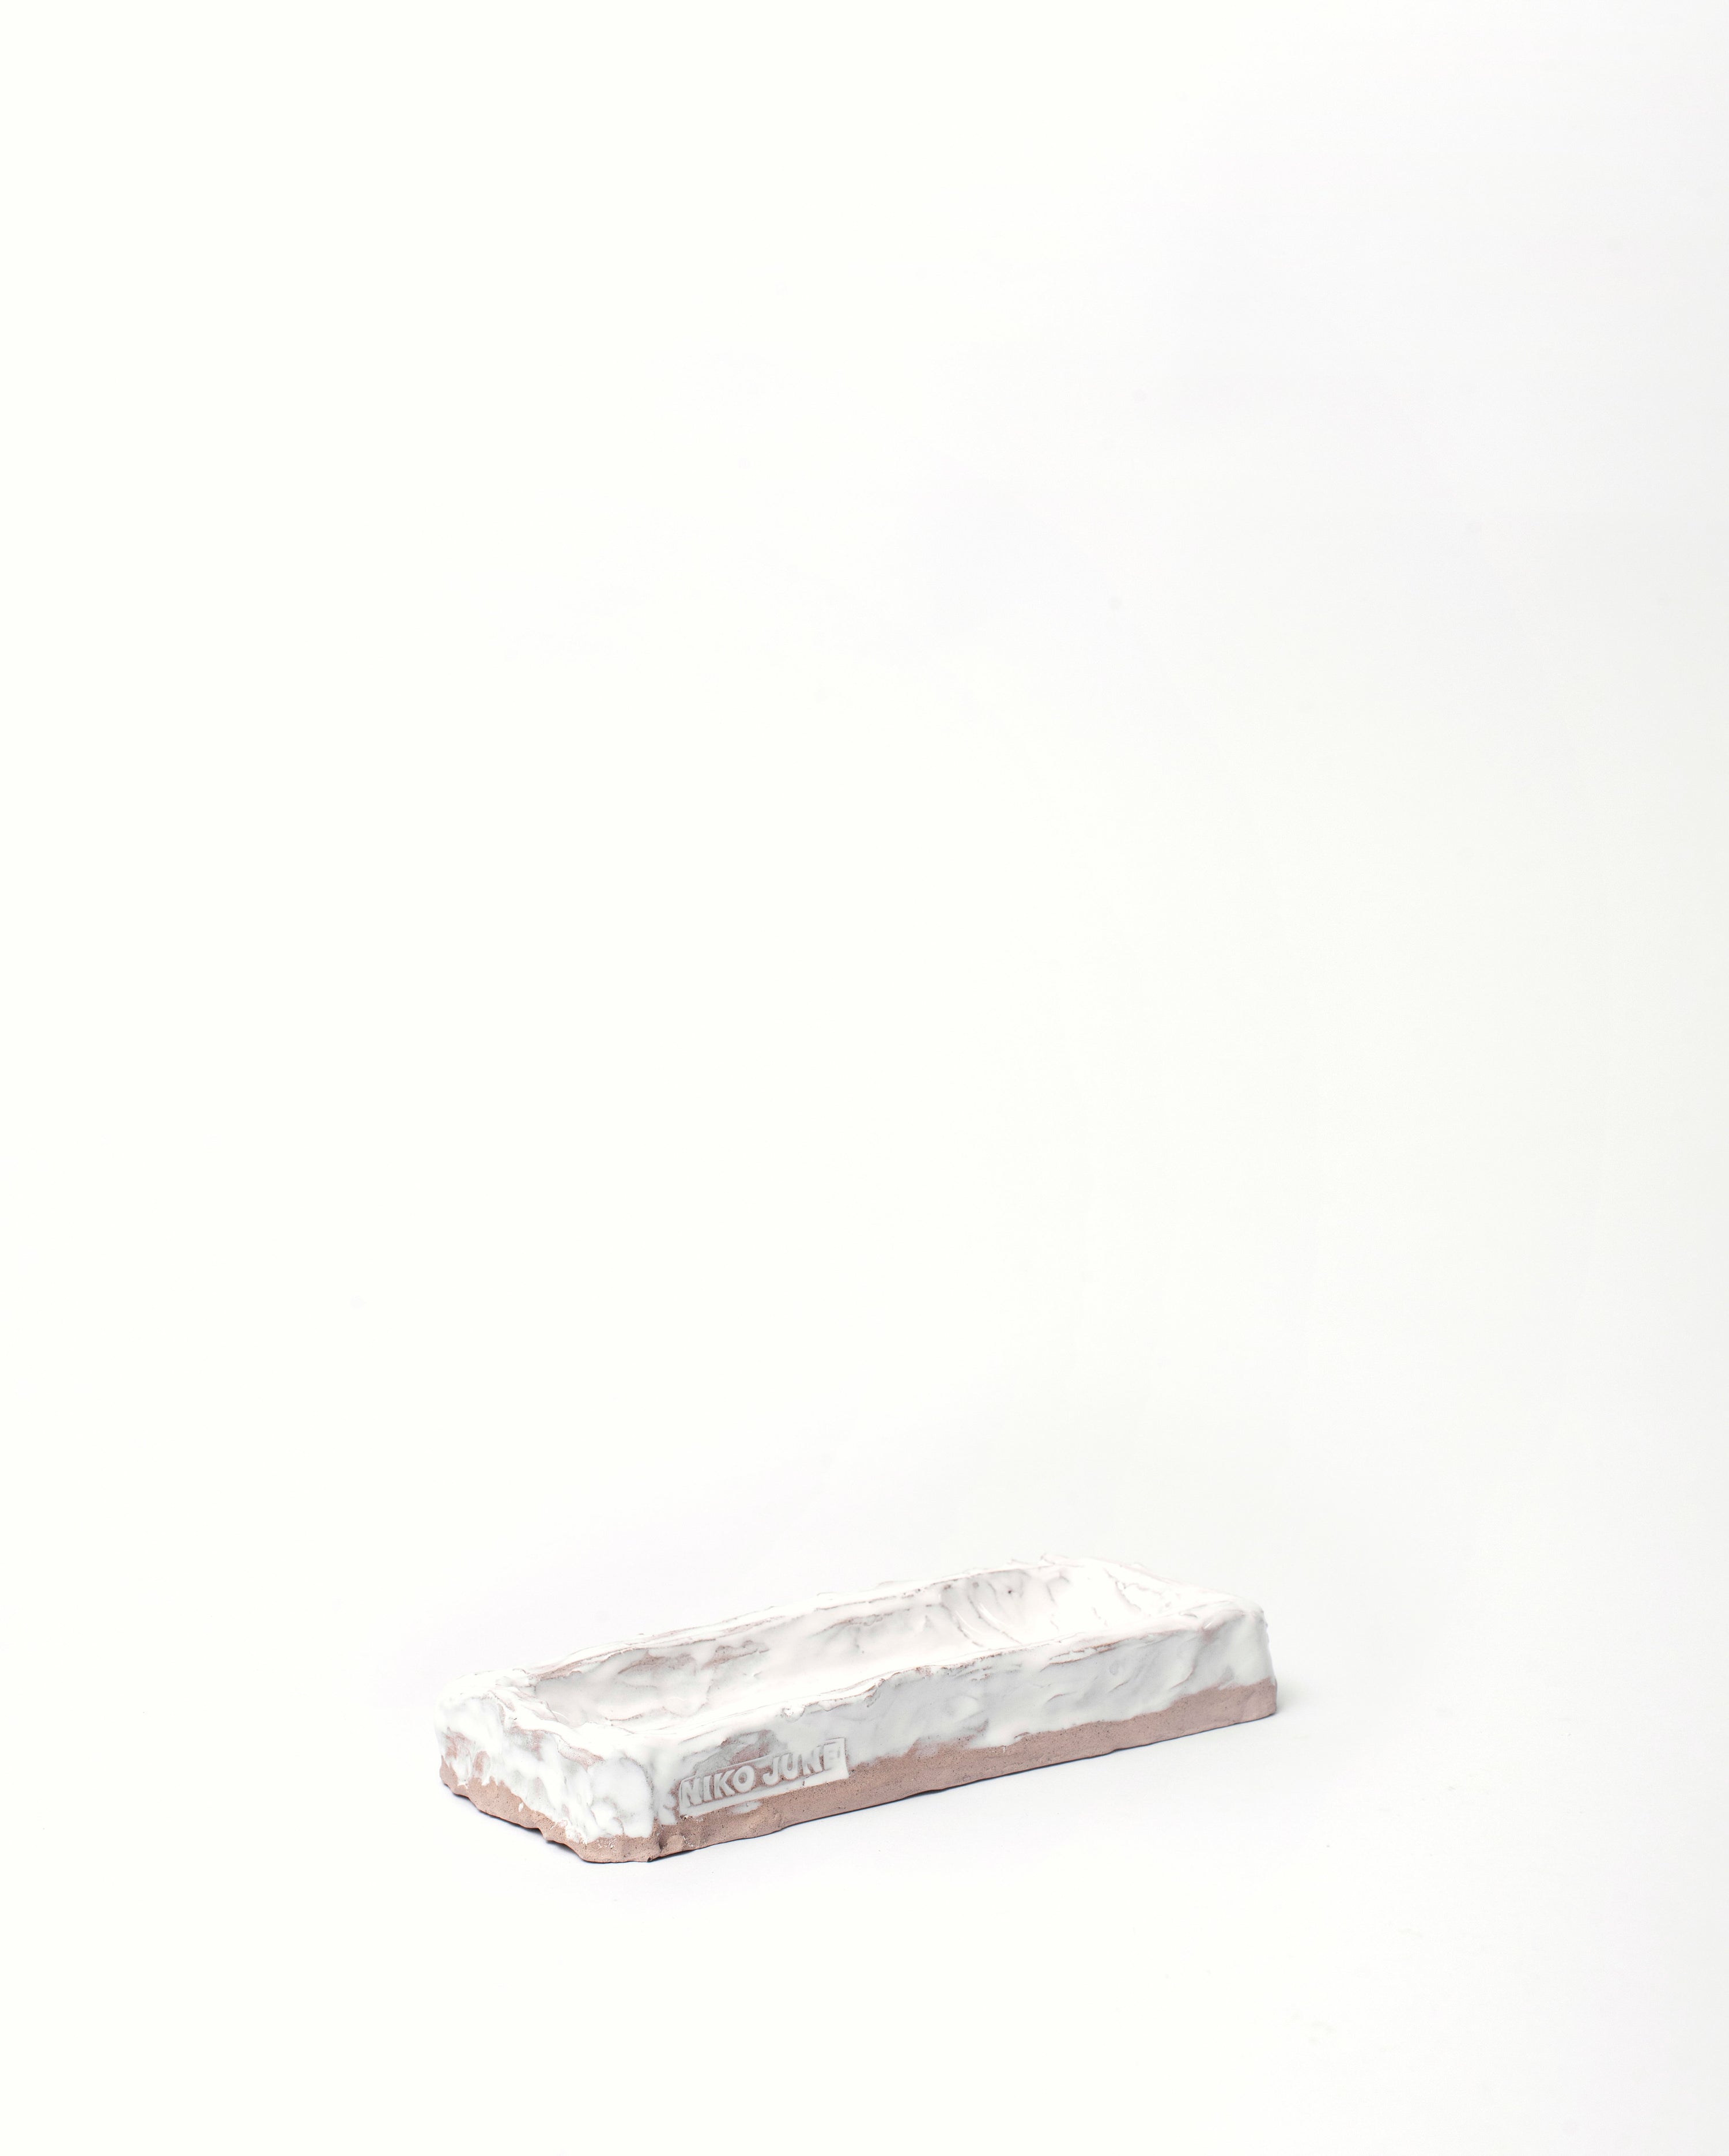 Handmade ceramic organizer object in white tilted white background